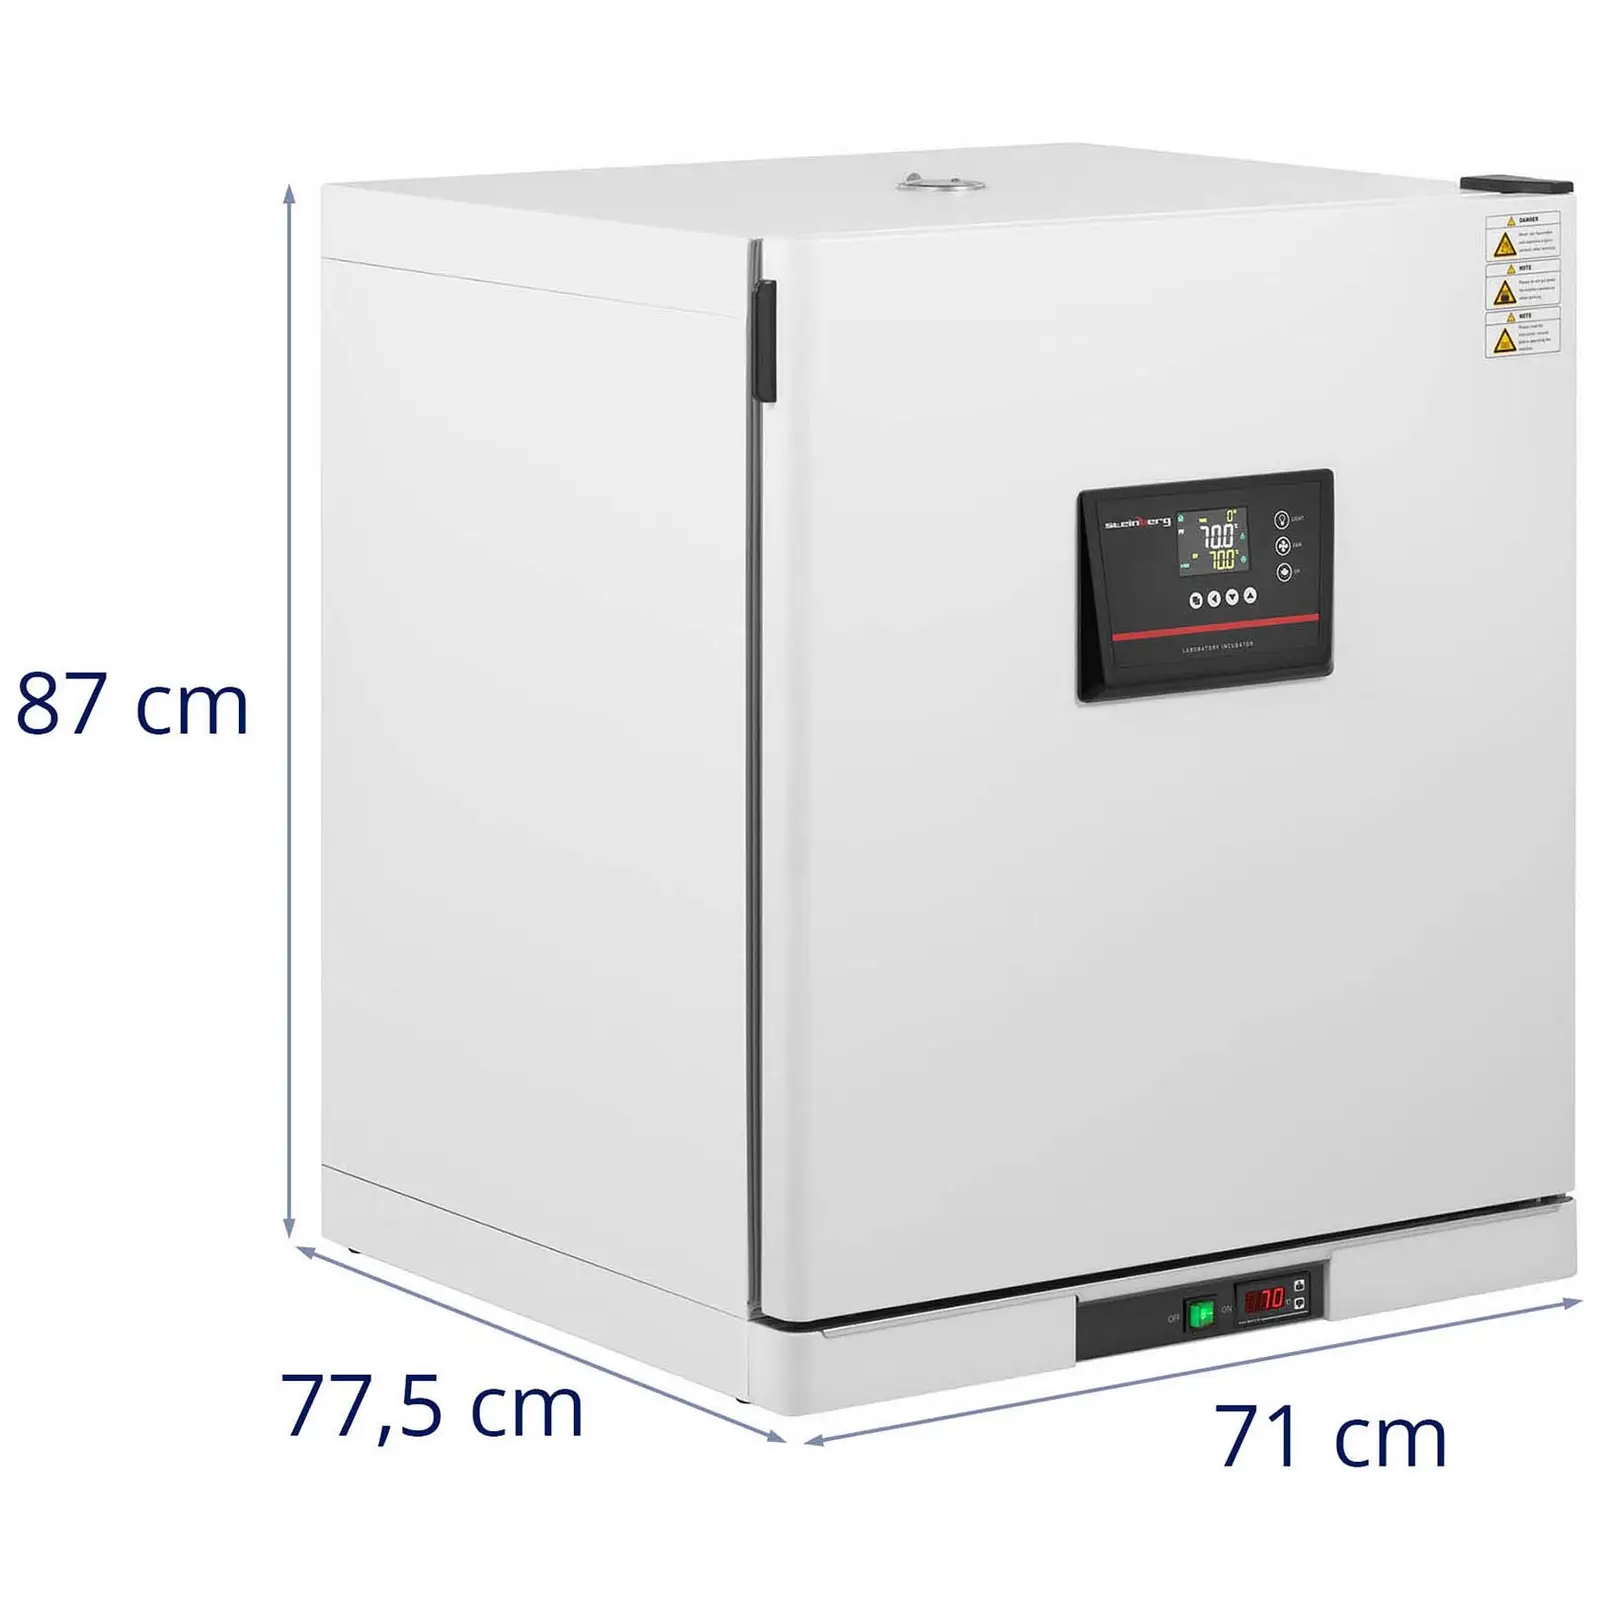 Värmeskåp till laboratorium - Upp till 70 °C - 210 L - Konvektion